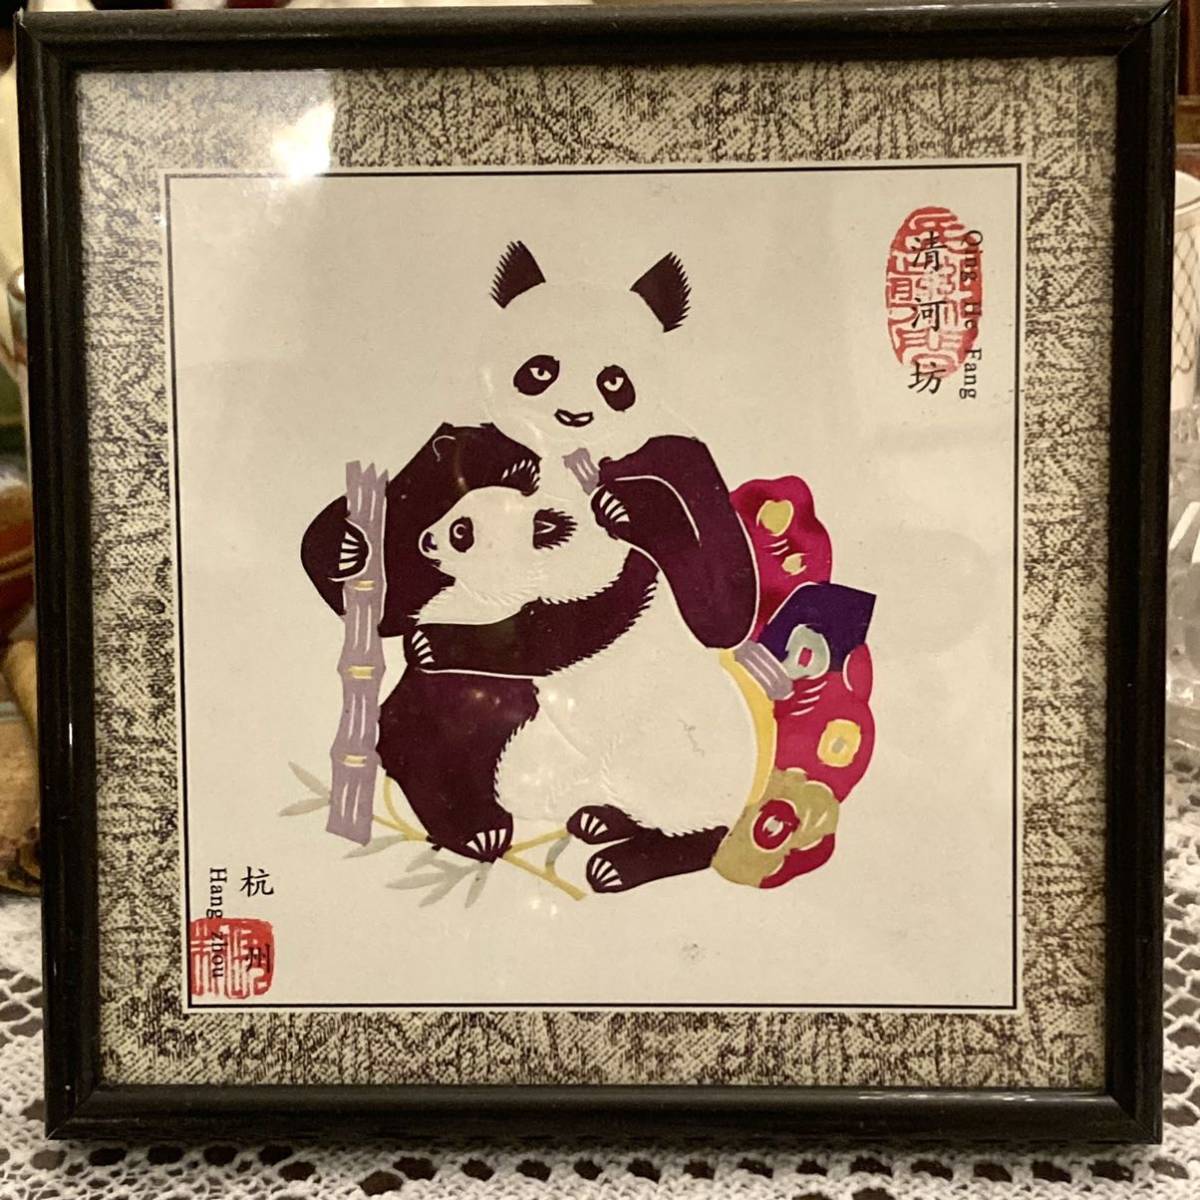 New Unused Panda China Chinese Paper Cutting Miniature Painting Handmade Craft Framed Item C, artwork, painting, Hirie, Kirie